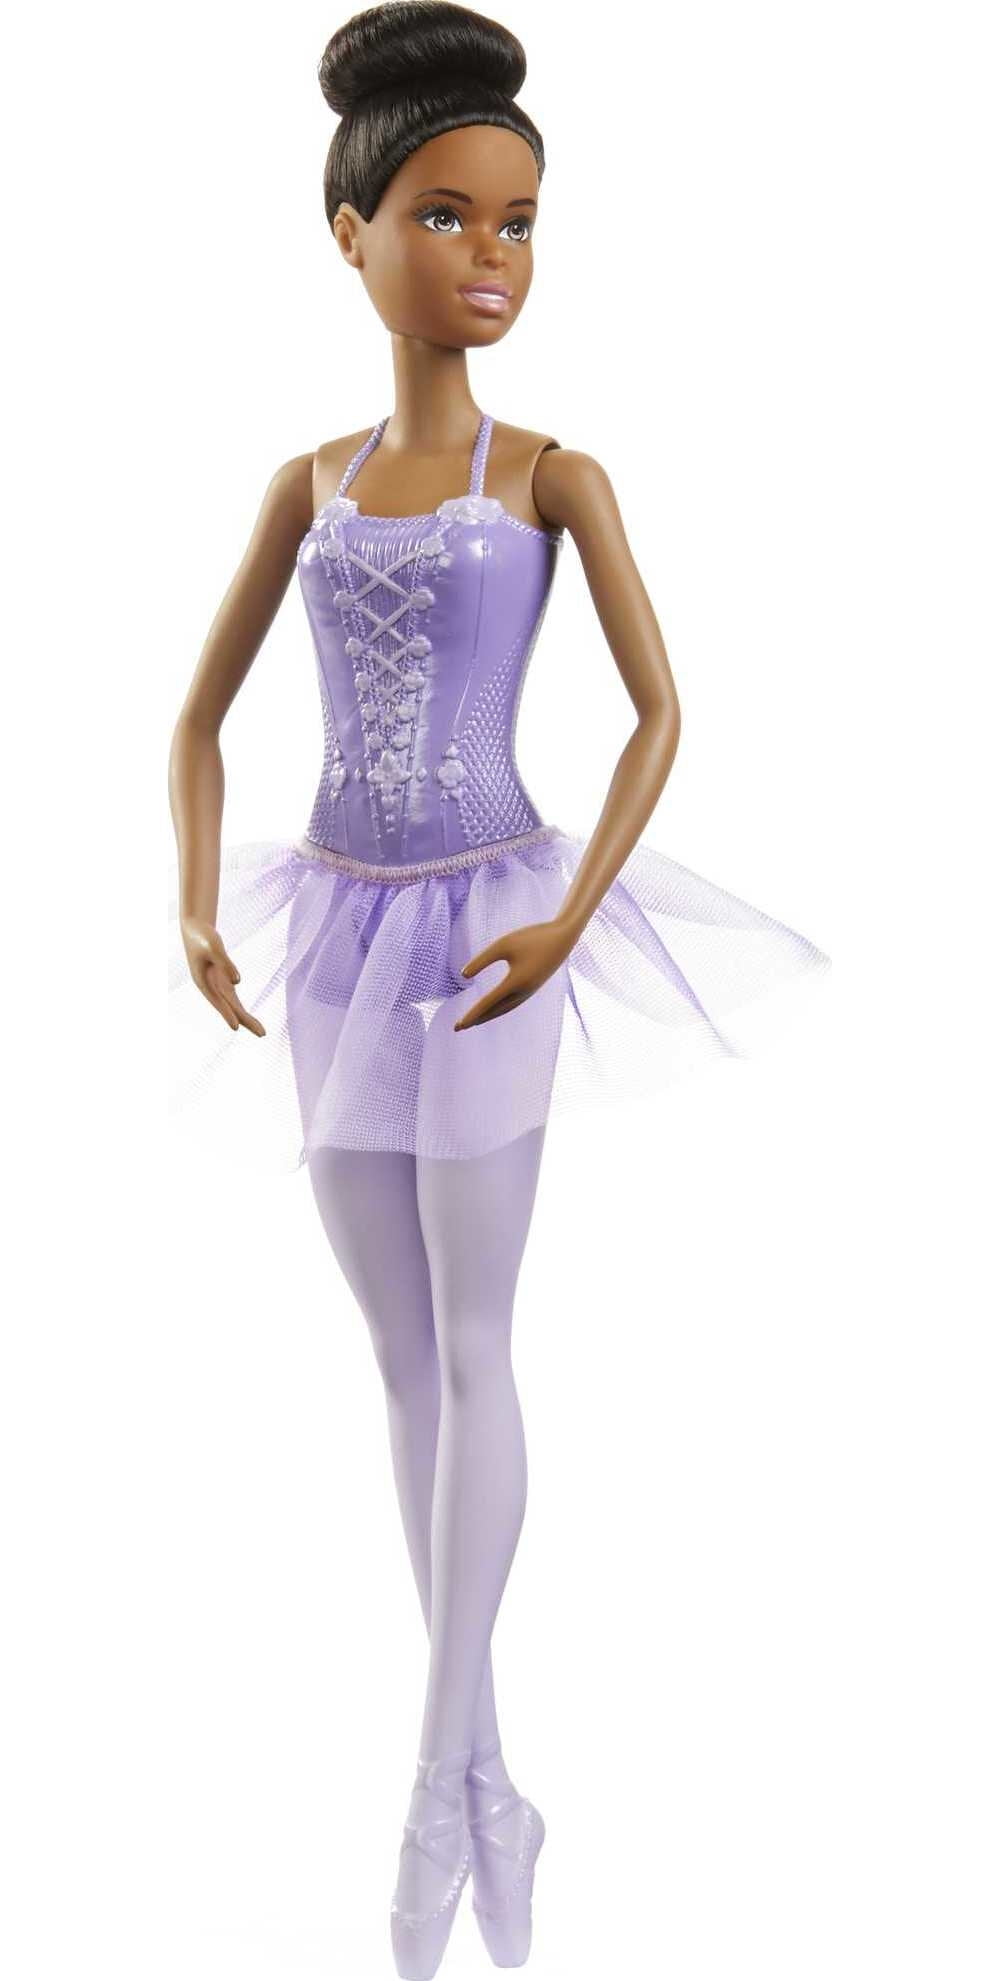 Barbie Ballerina Doll in Purple Tutu with Black Hair, Brown Eyes